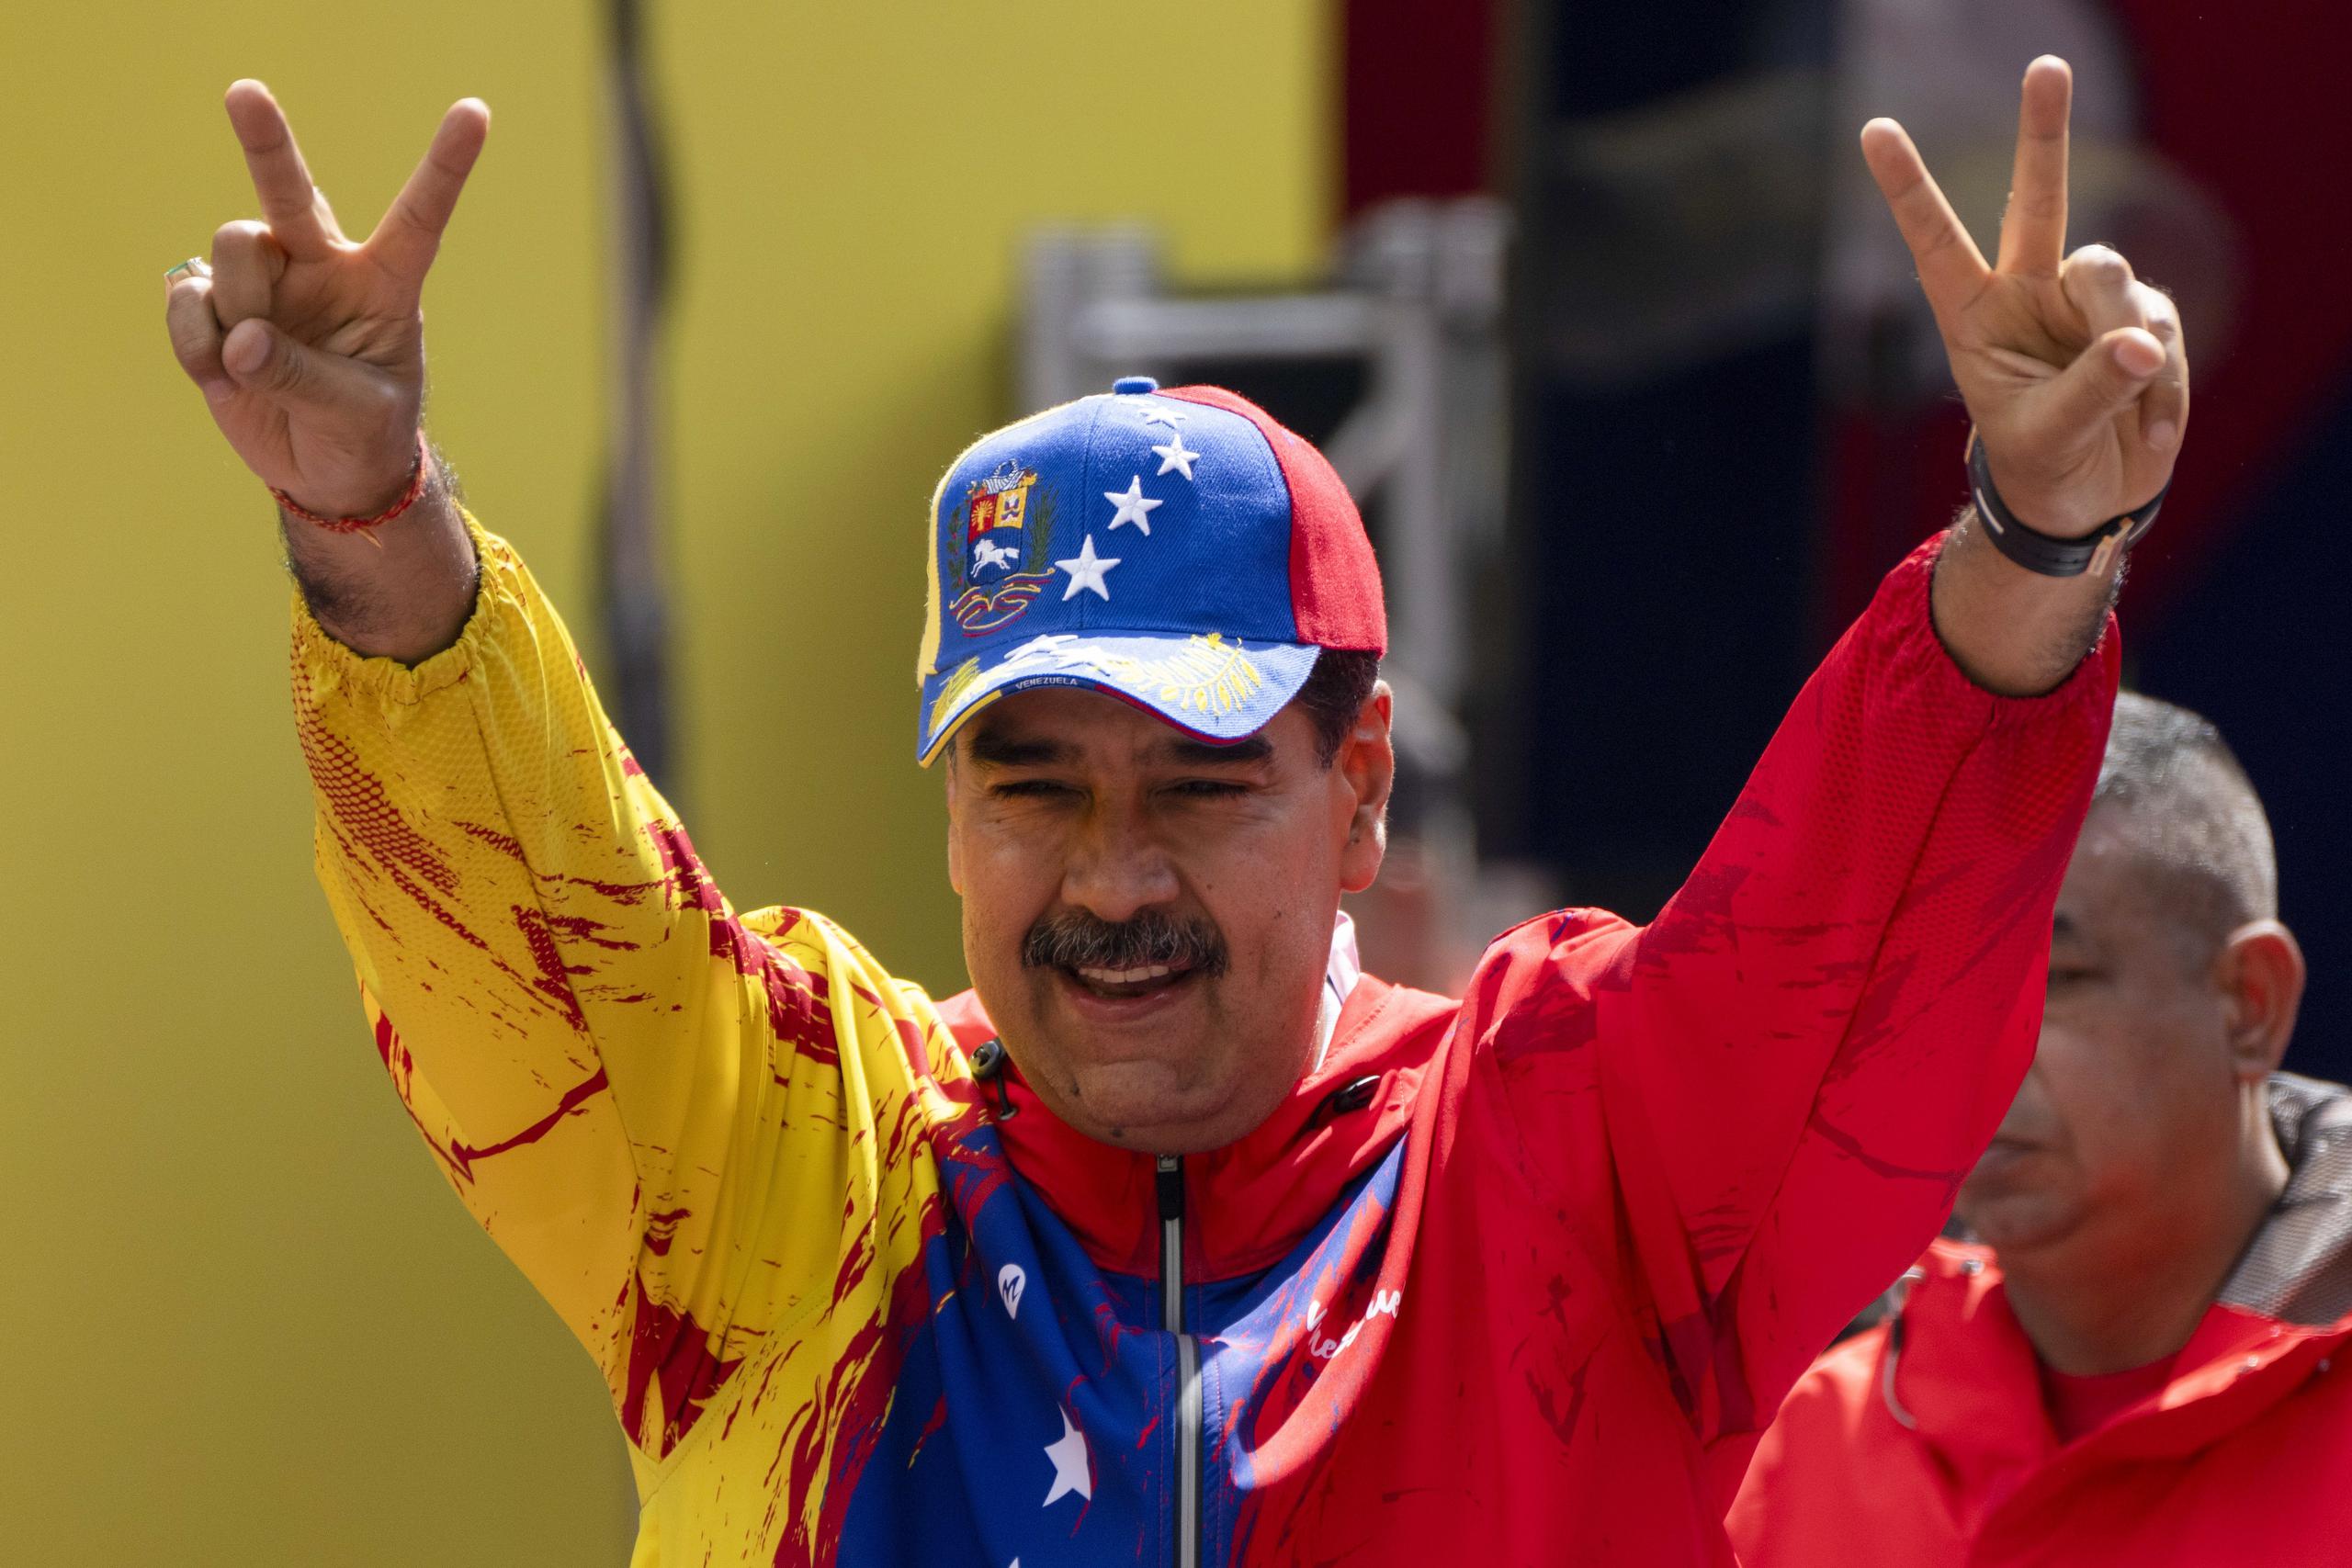 Estados Unidos puso como una de las condiciones para mantener el alivio de sanciones sobre Venezuela que todos los candidatos de la oposición puedan participar en las elecciones presidenciales del próximo 28 de julio.